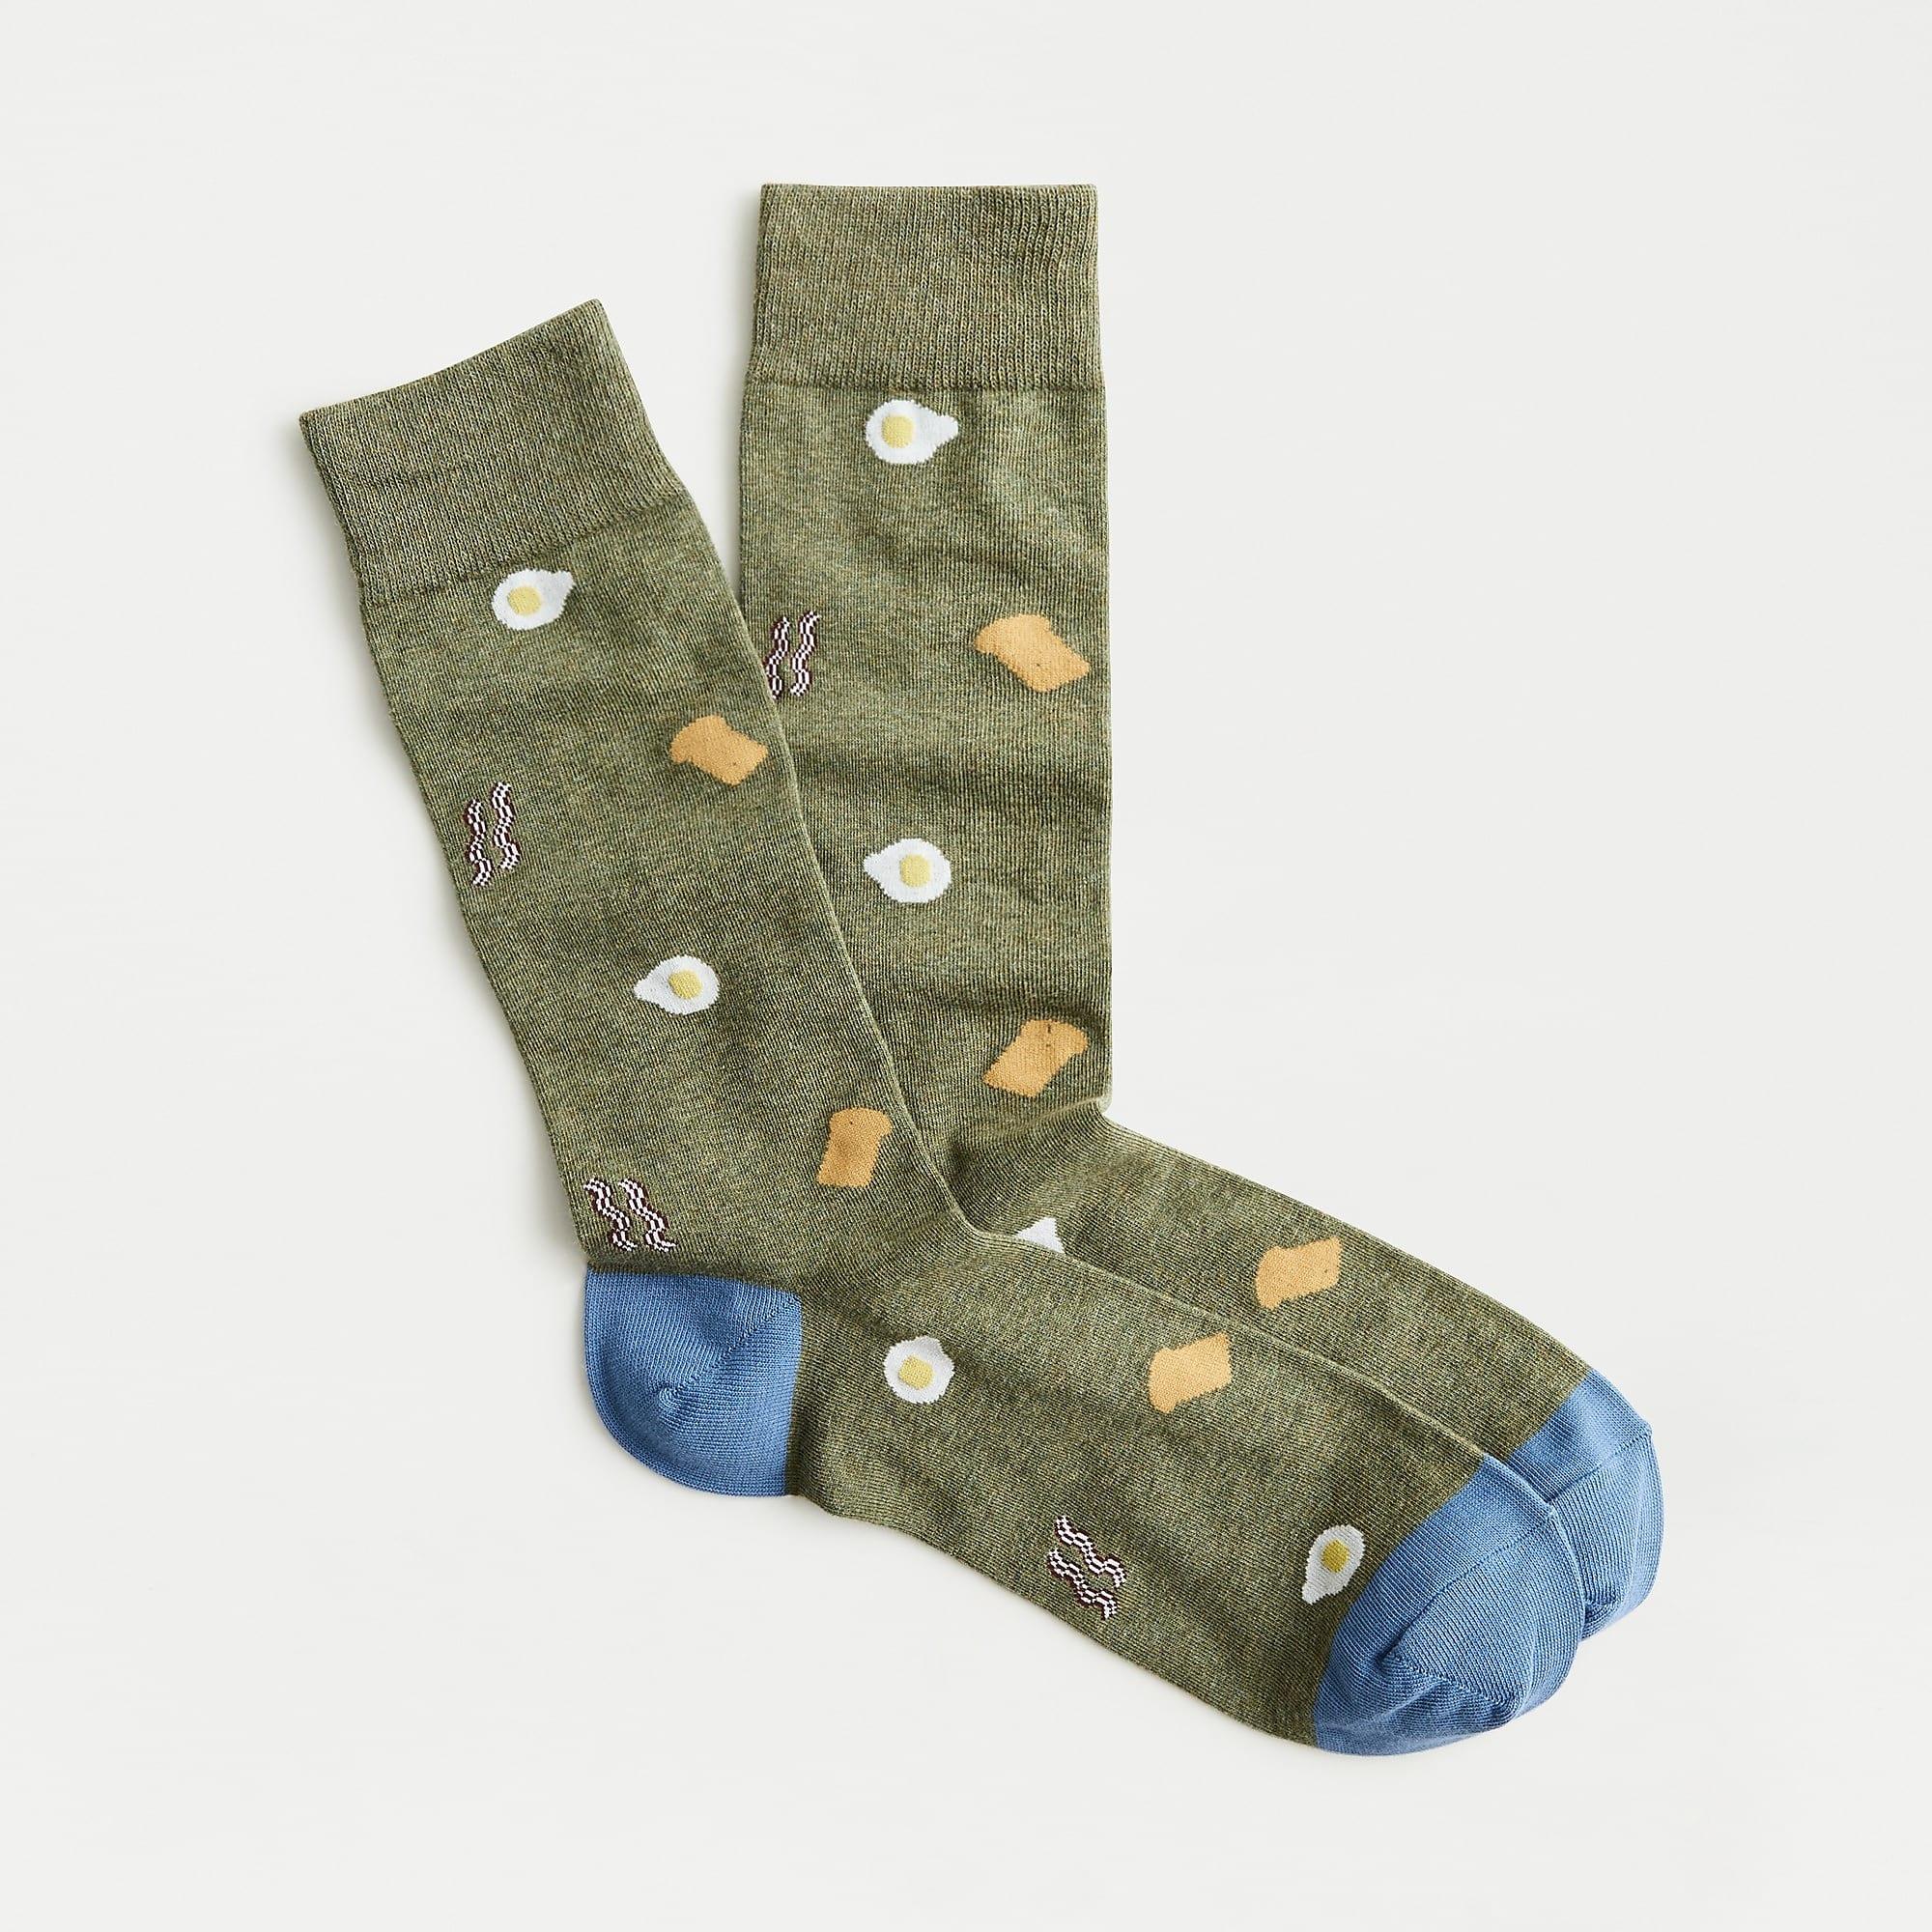 J.Crew Cotton Breakfast Socks in Gray for Men - Lyst